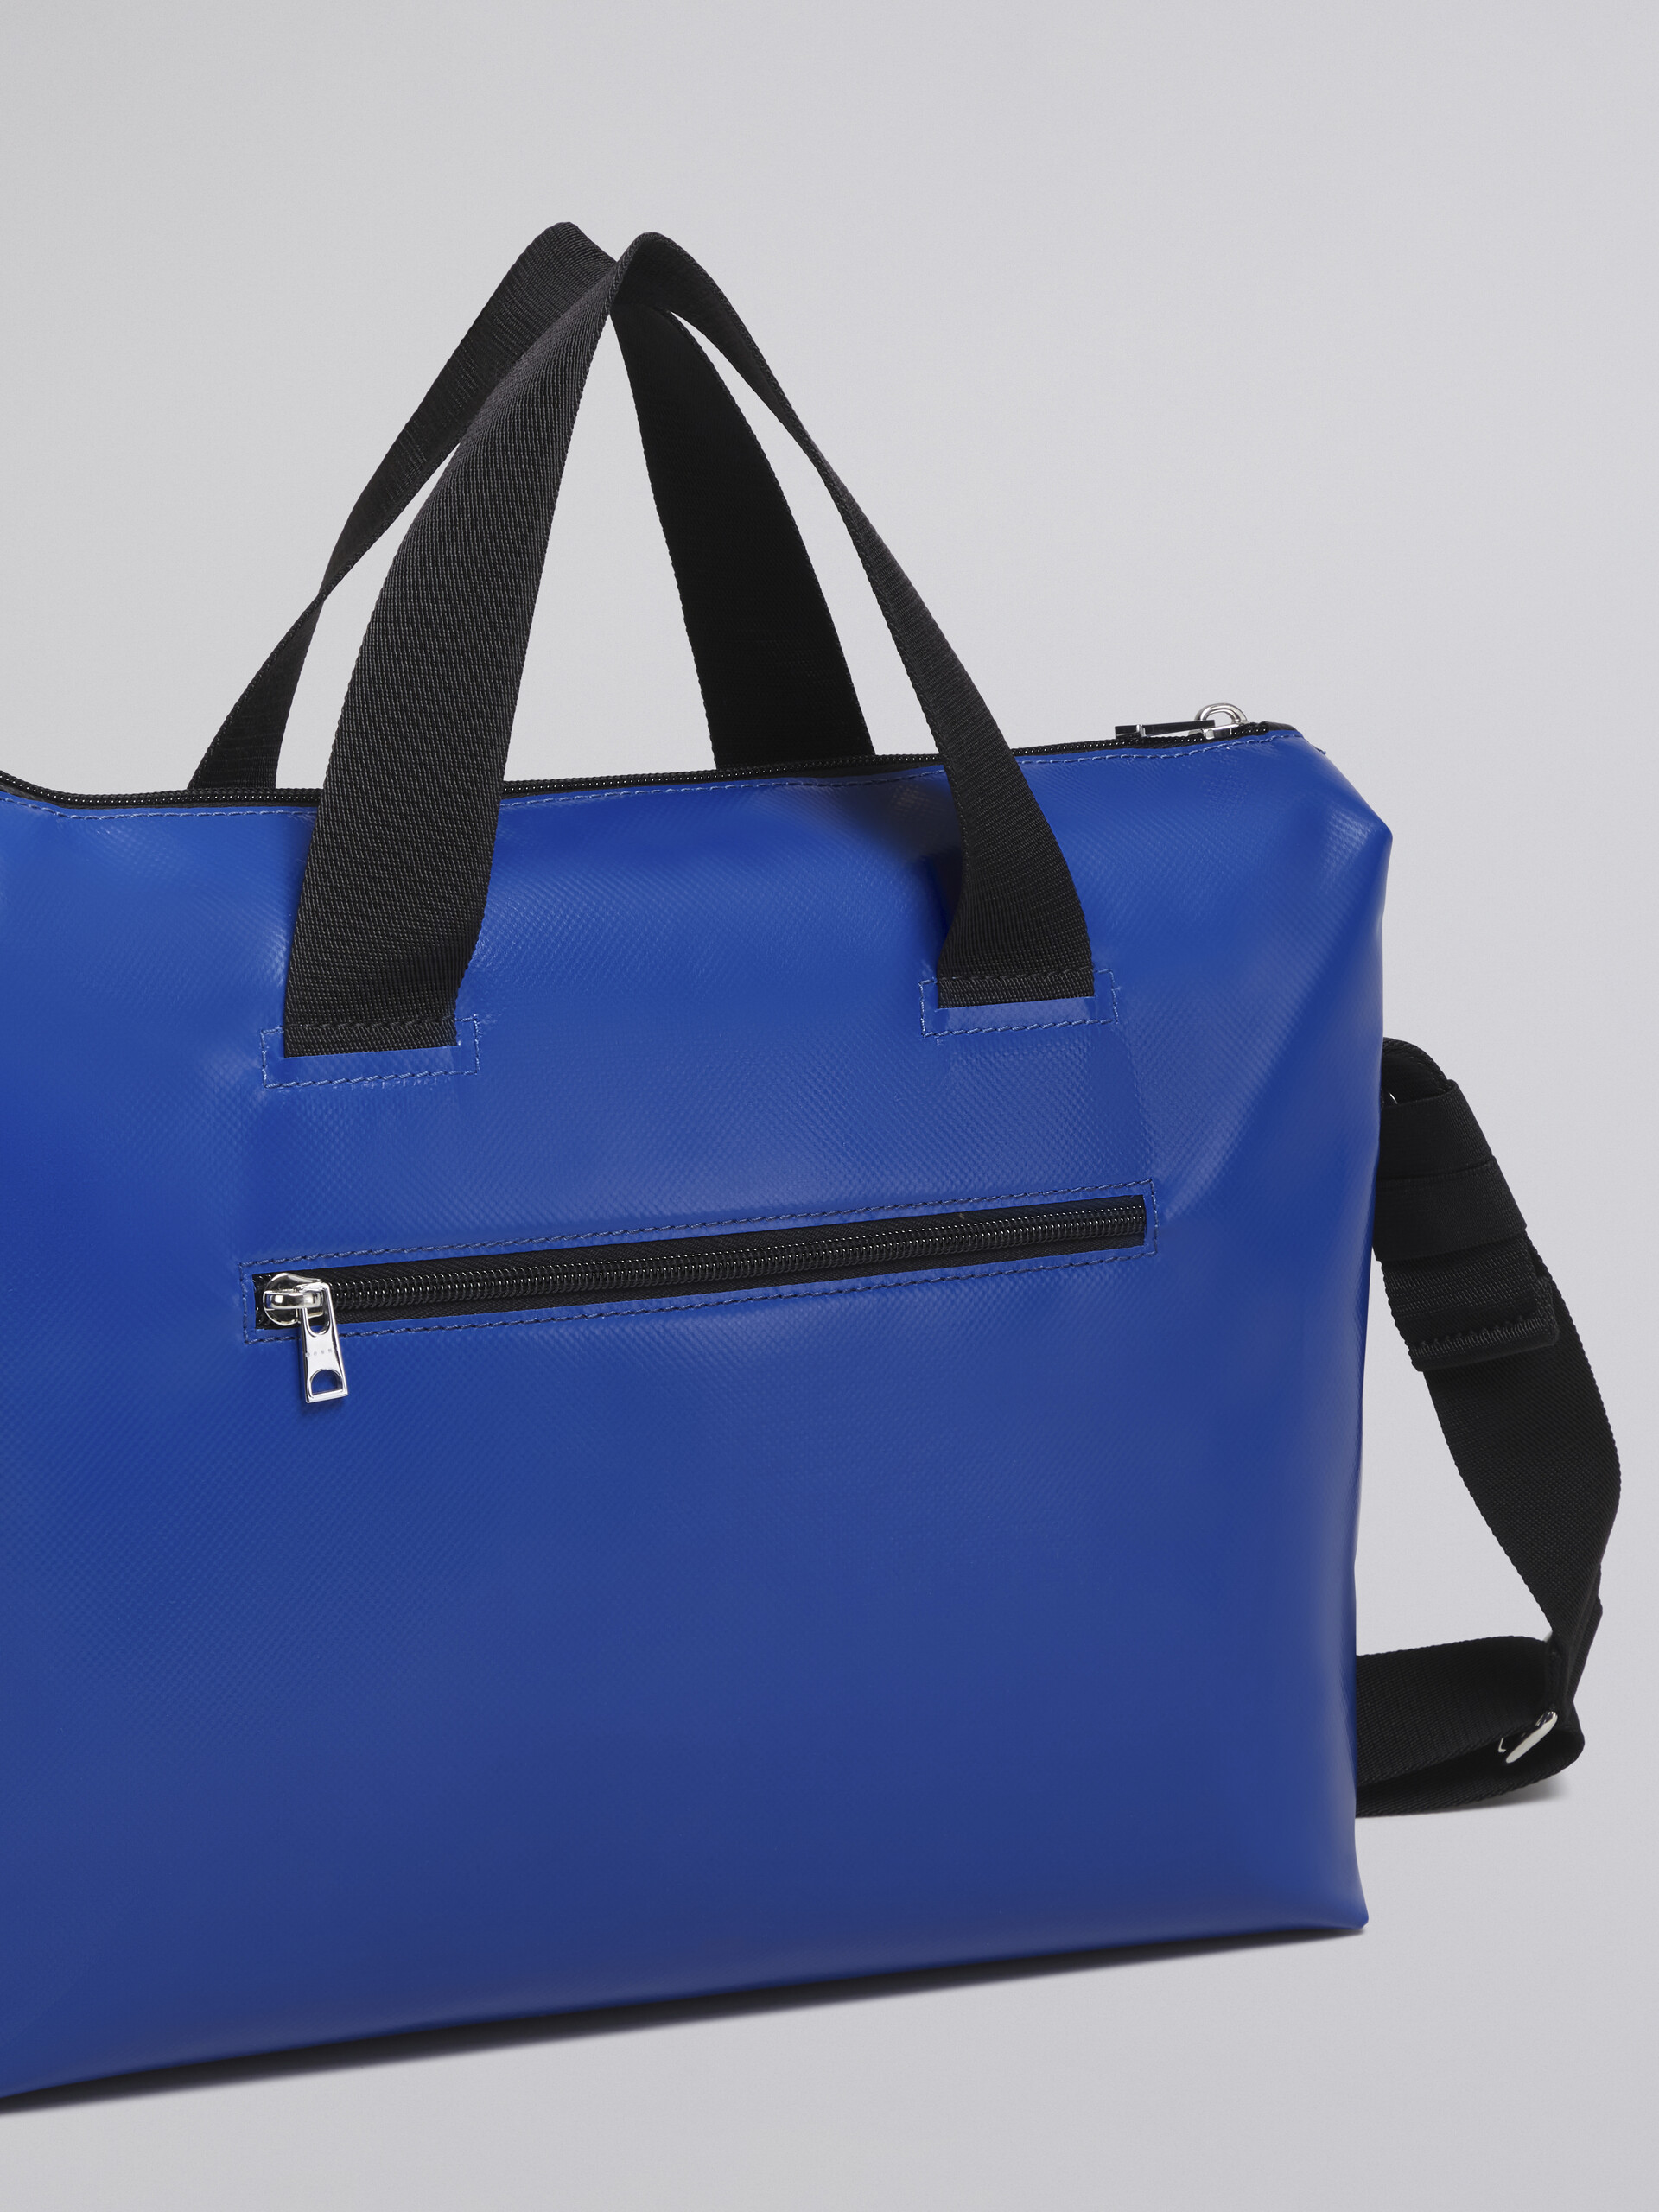 블랙 및 블루 TRIBECA 백 - Handbag - Image 5